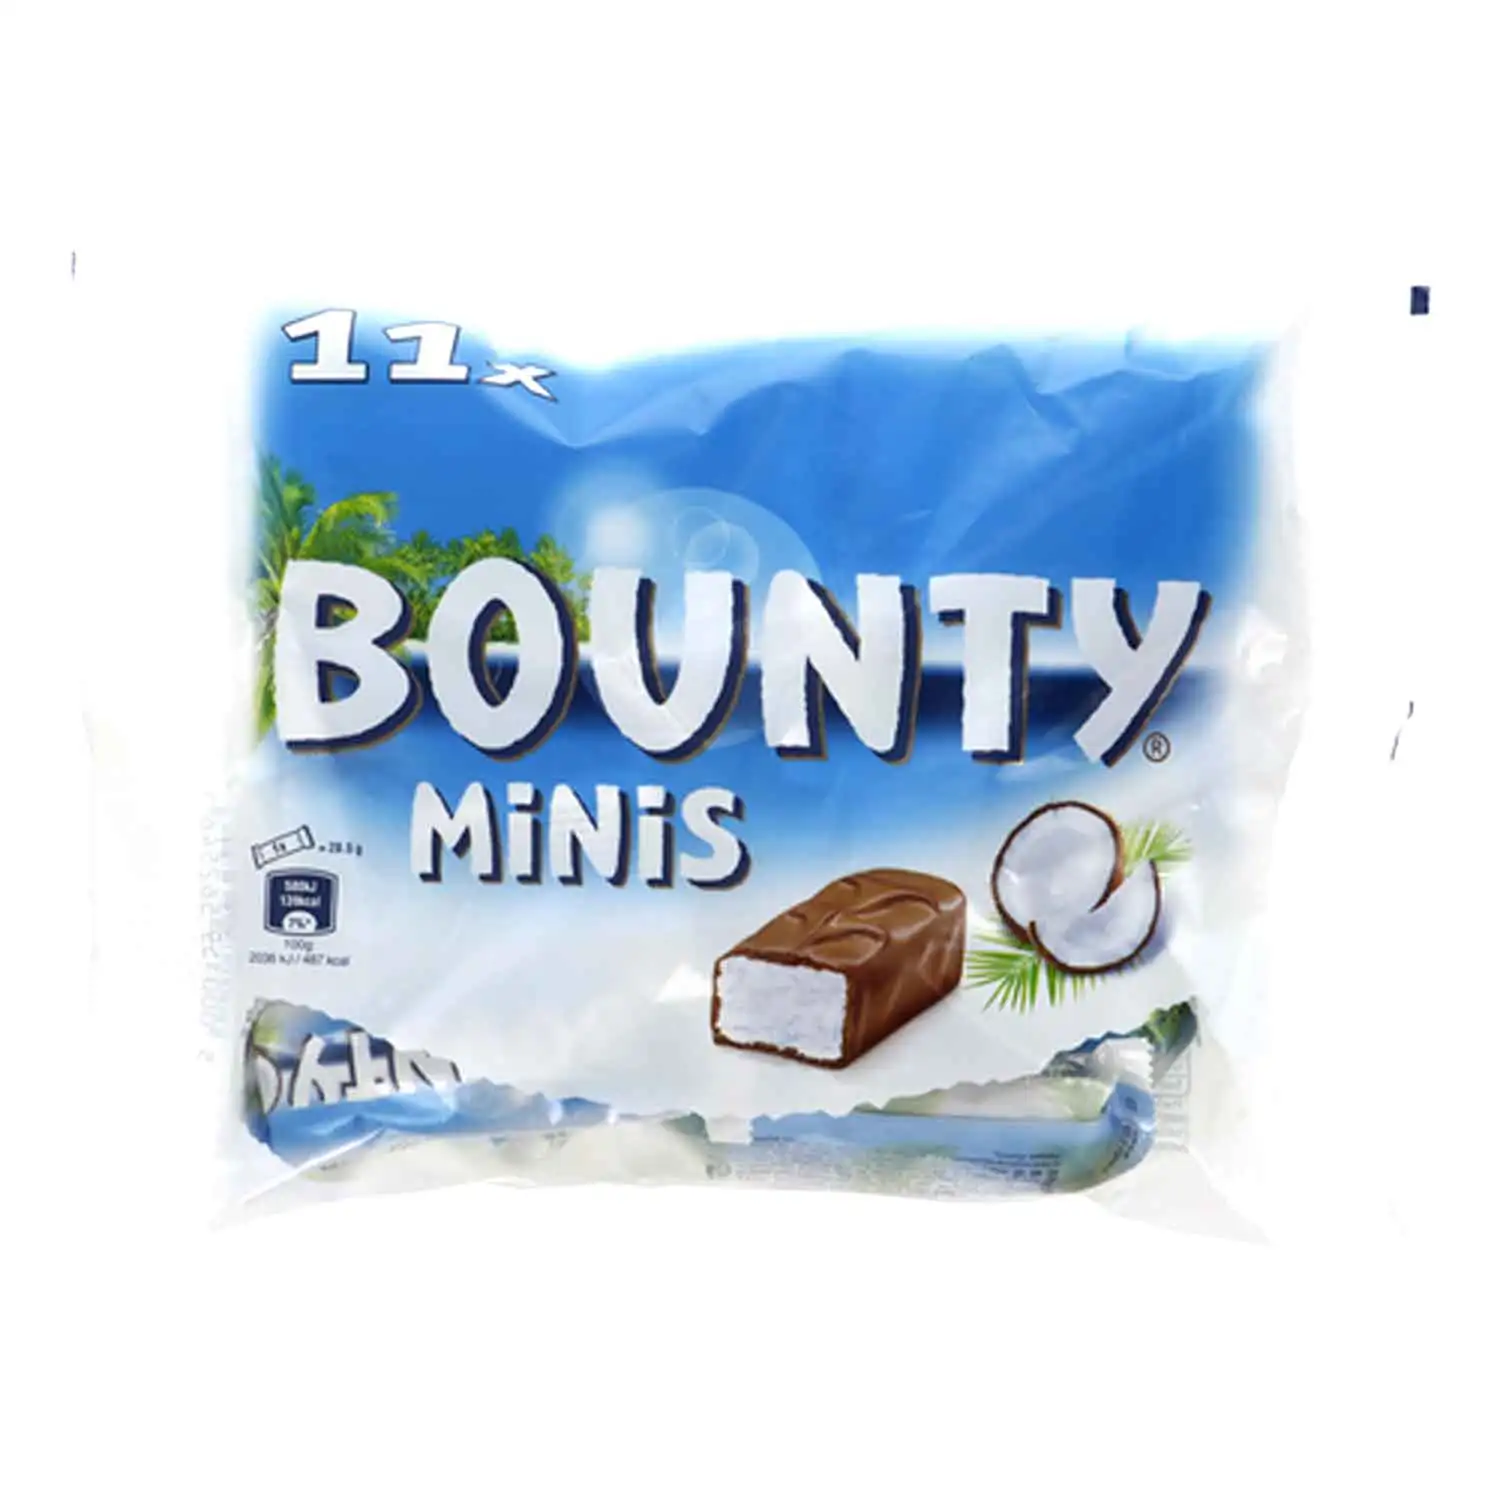 Bounty minis 333g - Buy at Real Tobacco